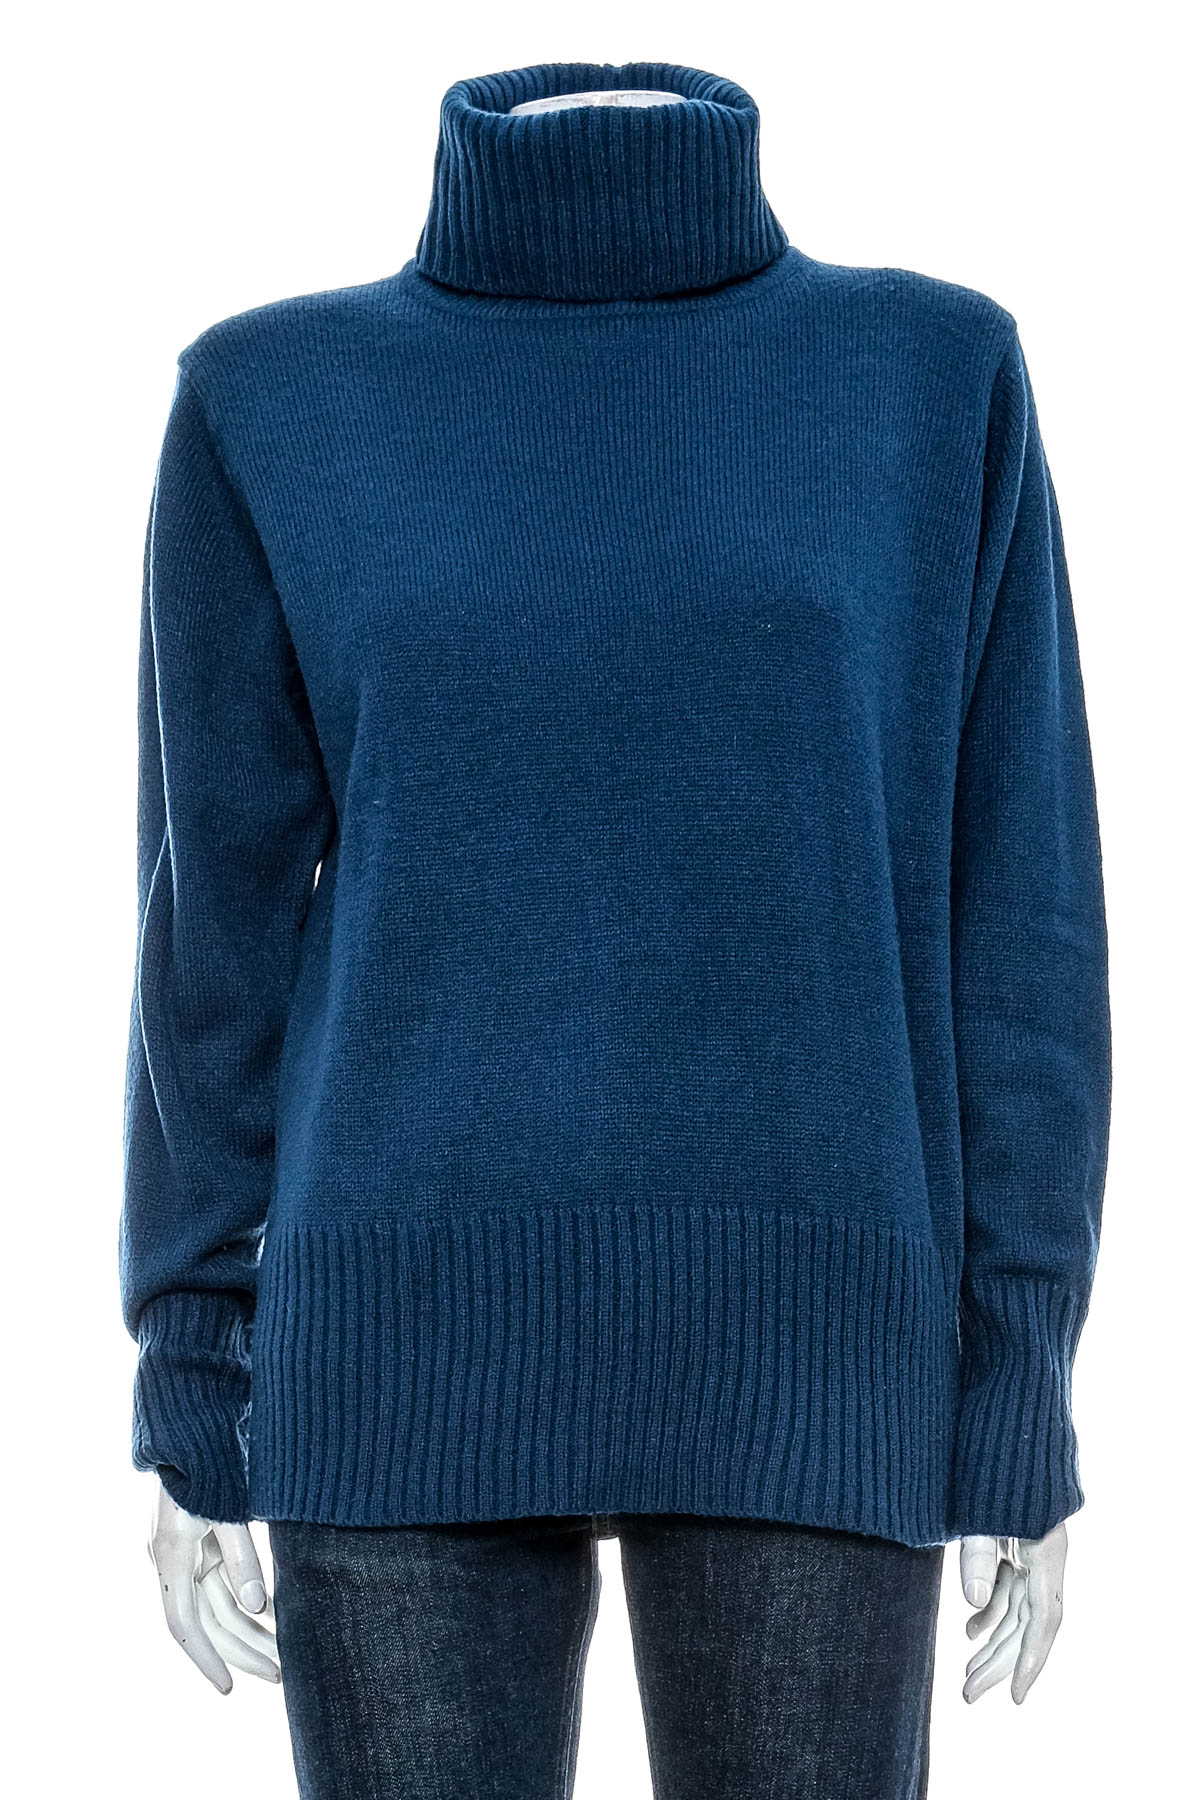 Women's sweater - Janina - 0